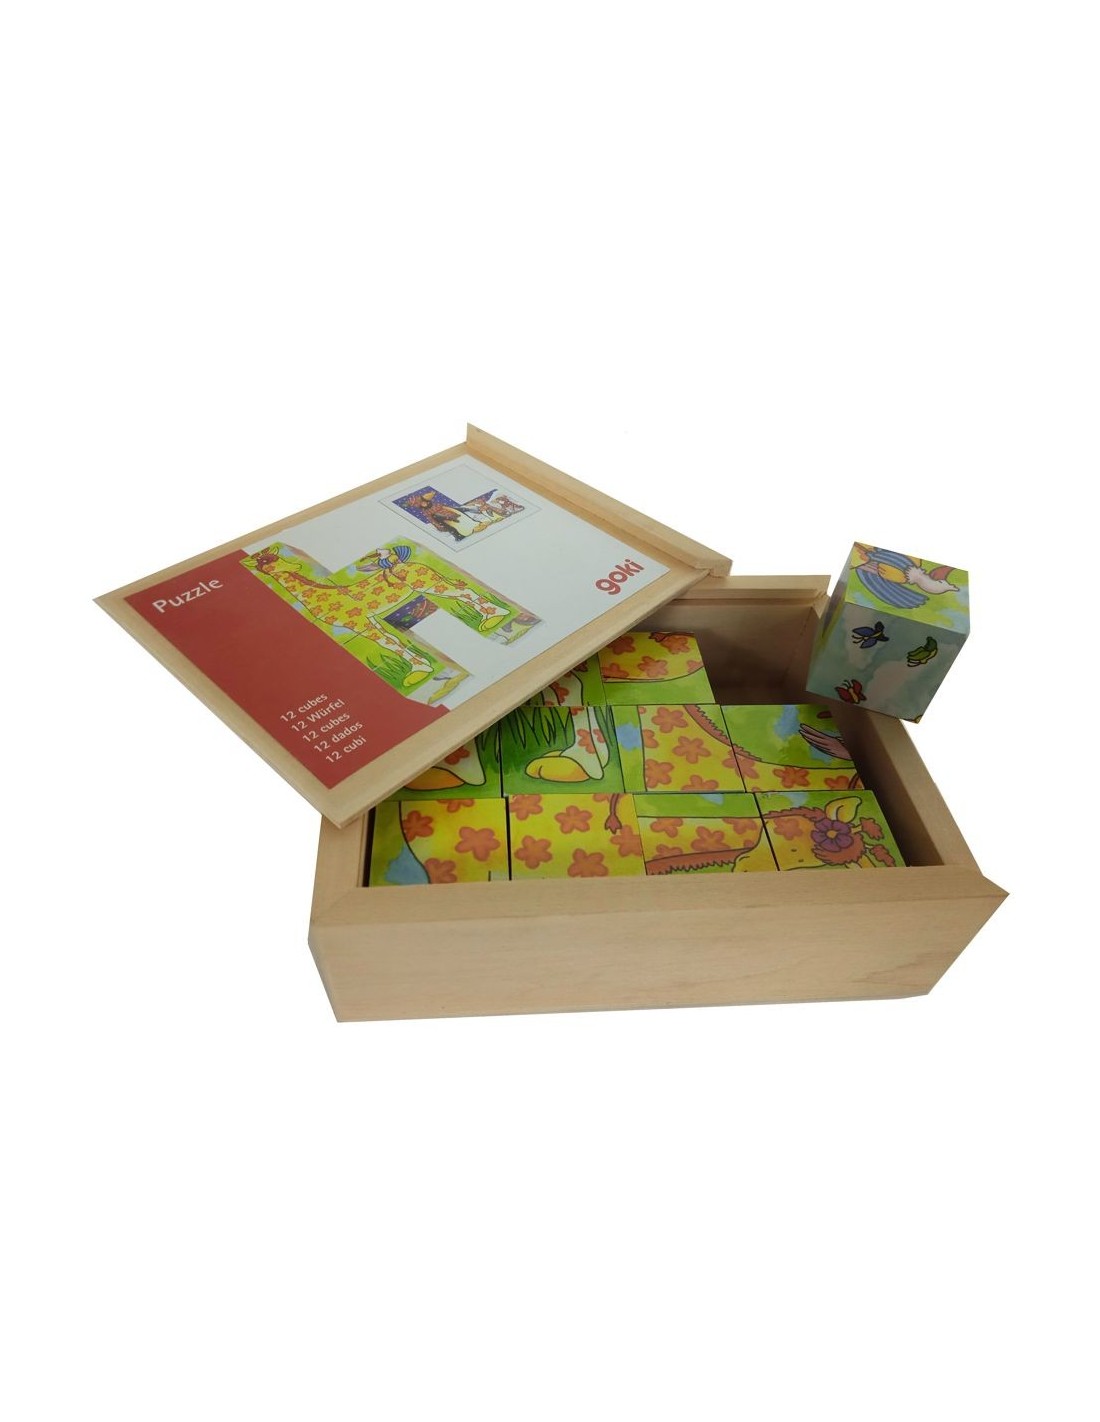 Puzle de dotze daus en caixa de fusta amb dibuixos, joc d´encaixar infantil per a la motricitat.